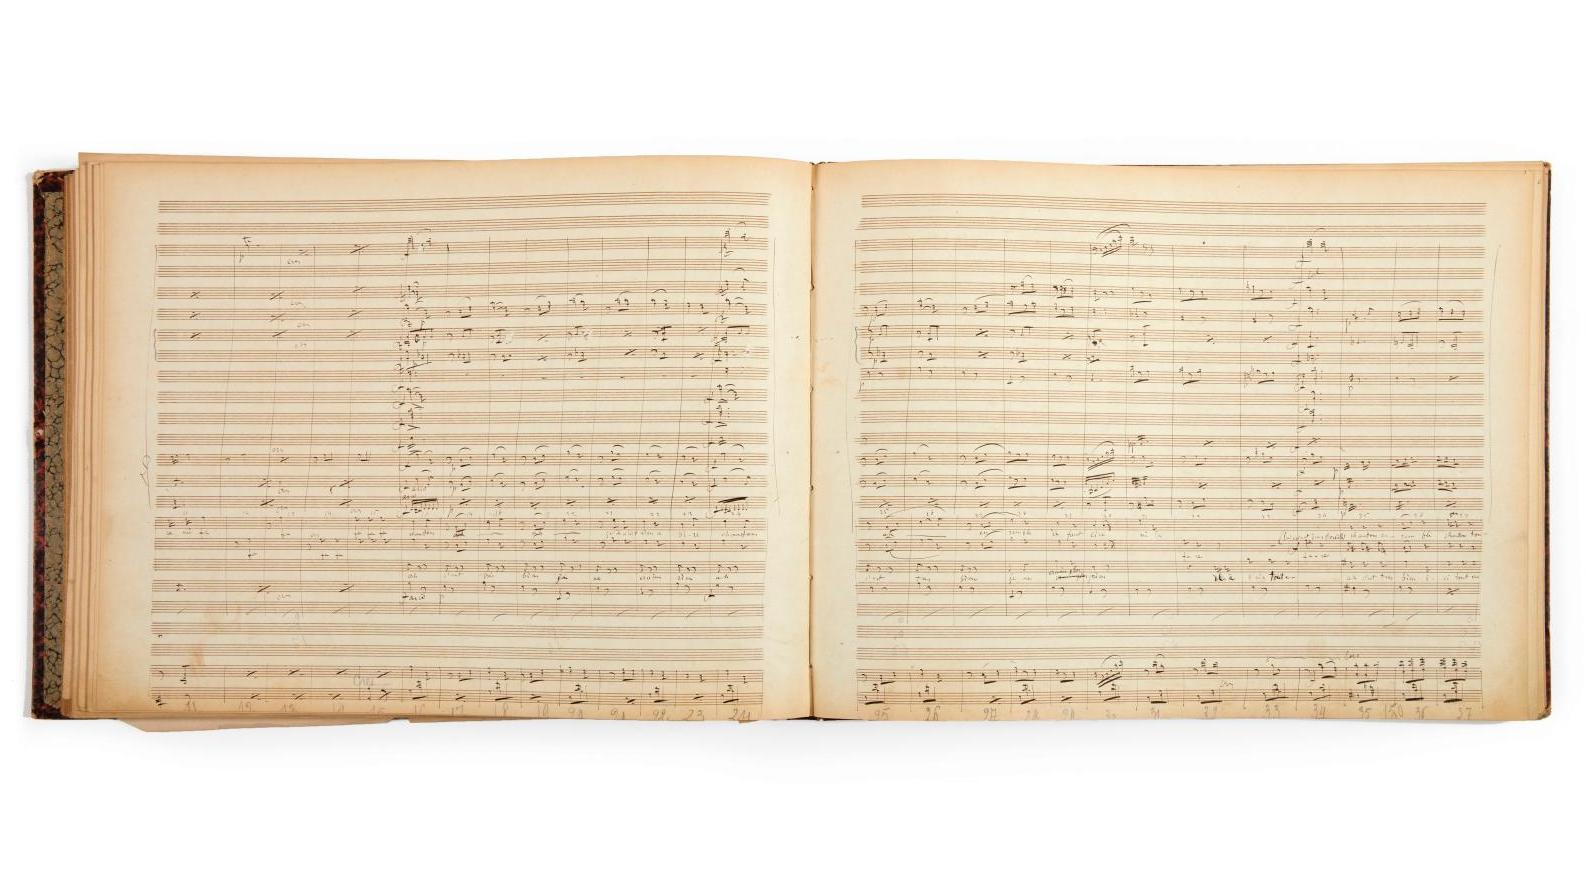 Jacques Offenbach (1819-1880), volume d’autographes manuscrits comportant des numéros... Offenbach a fêté son bicentenaire en musique